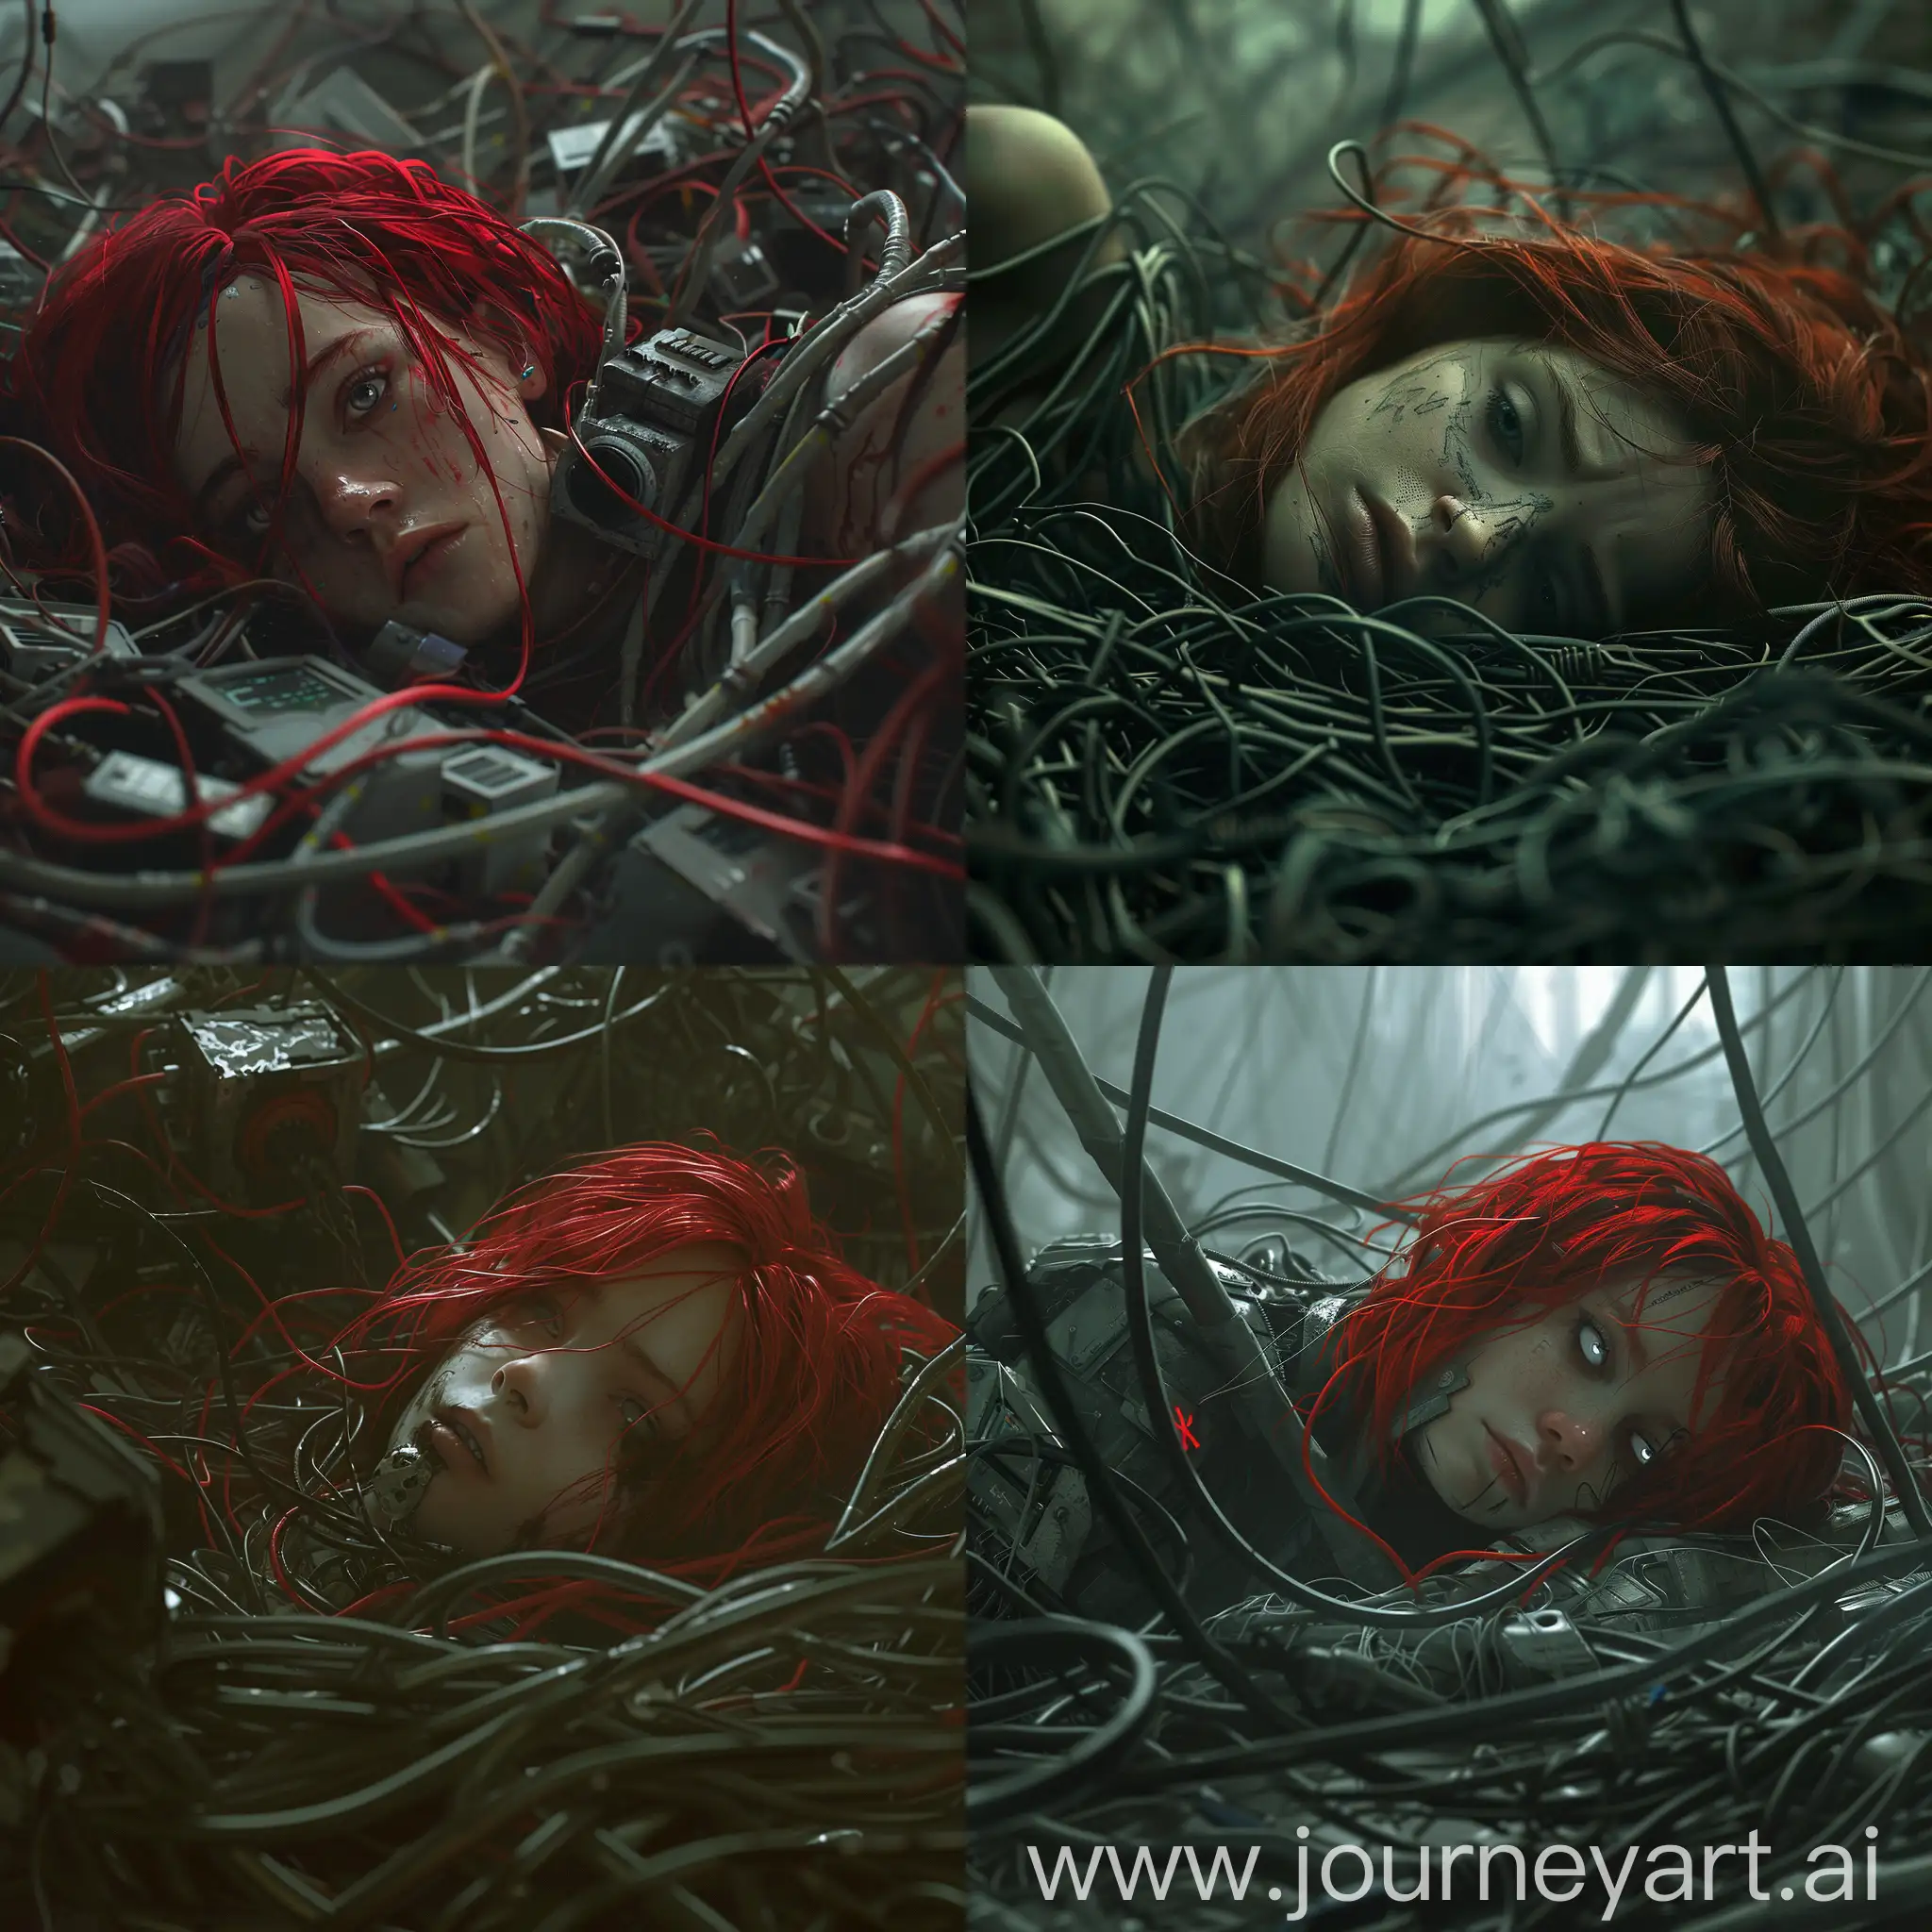 Киберпанк. Девушка с красными волосами лежит в куче проводов и она сама подключена к этим проводам. Мрачная атмосфера, на ее глазах печаль